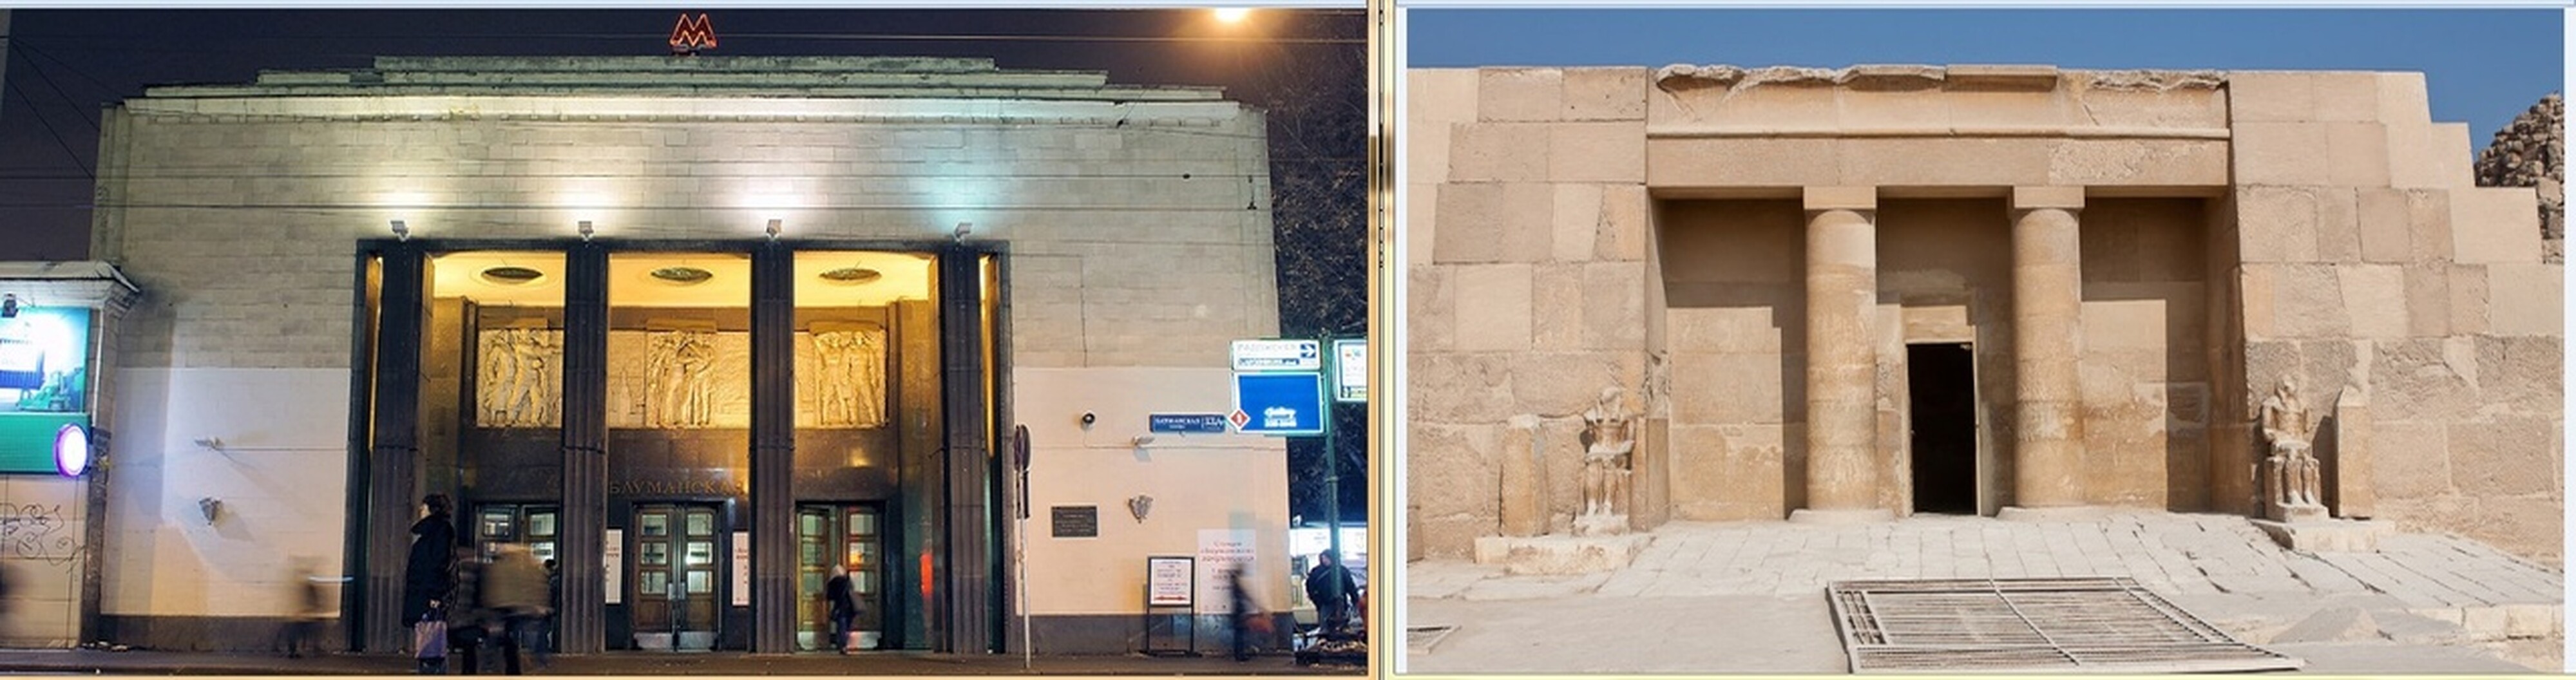 Снова порталы: слева - вход на станцию Бауманская, справа - в храм Хефрена в Древнем Египте.